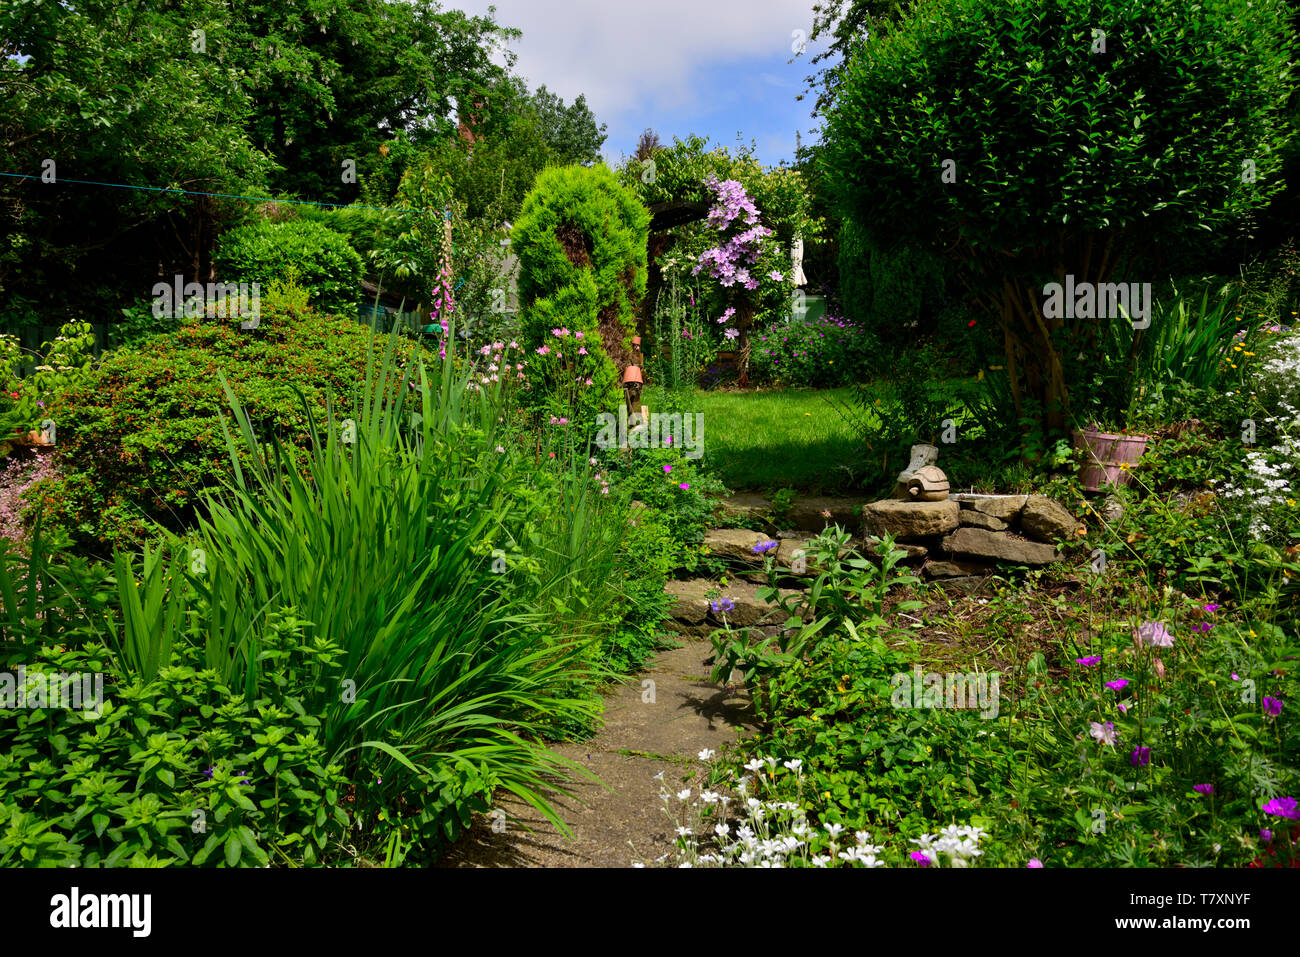 FLORA & FAUNA, Genaral private garden views of my own garden. Stock Photo